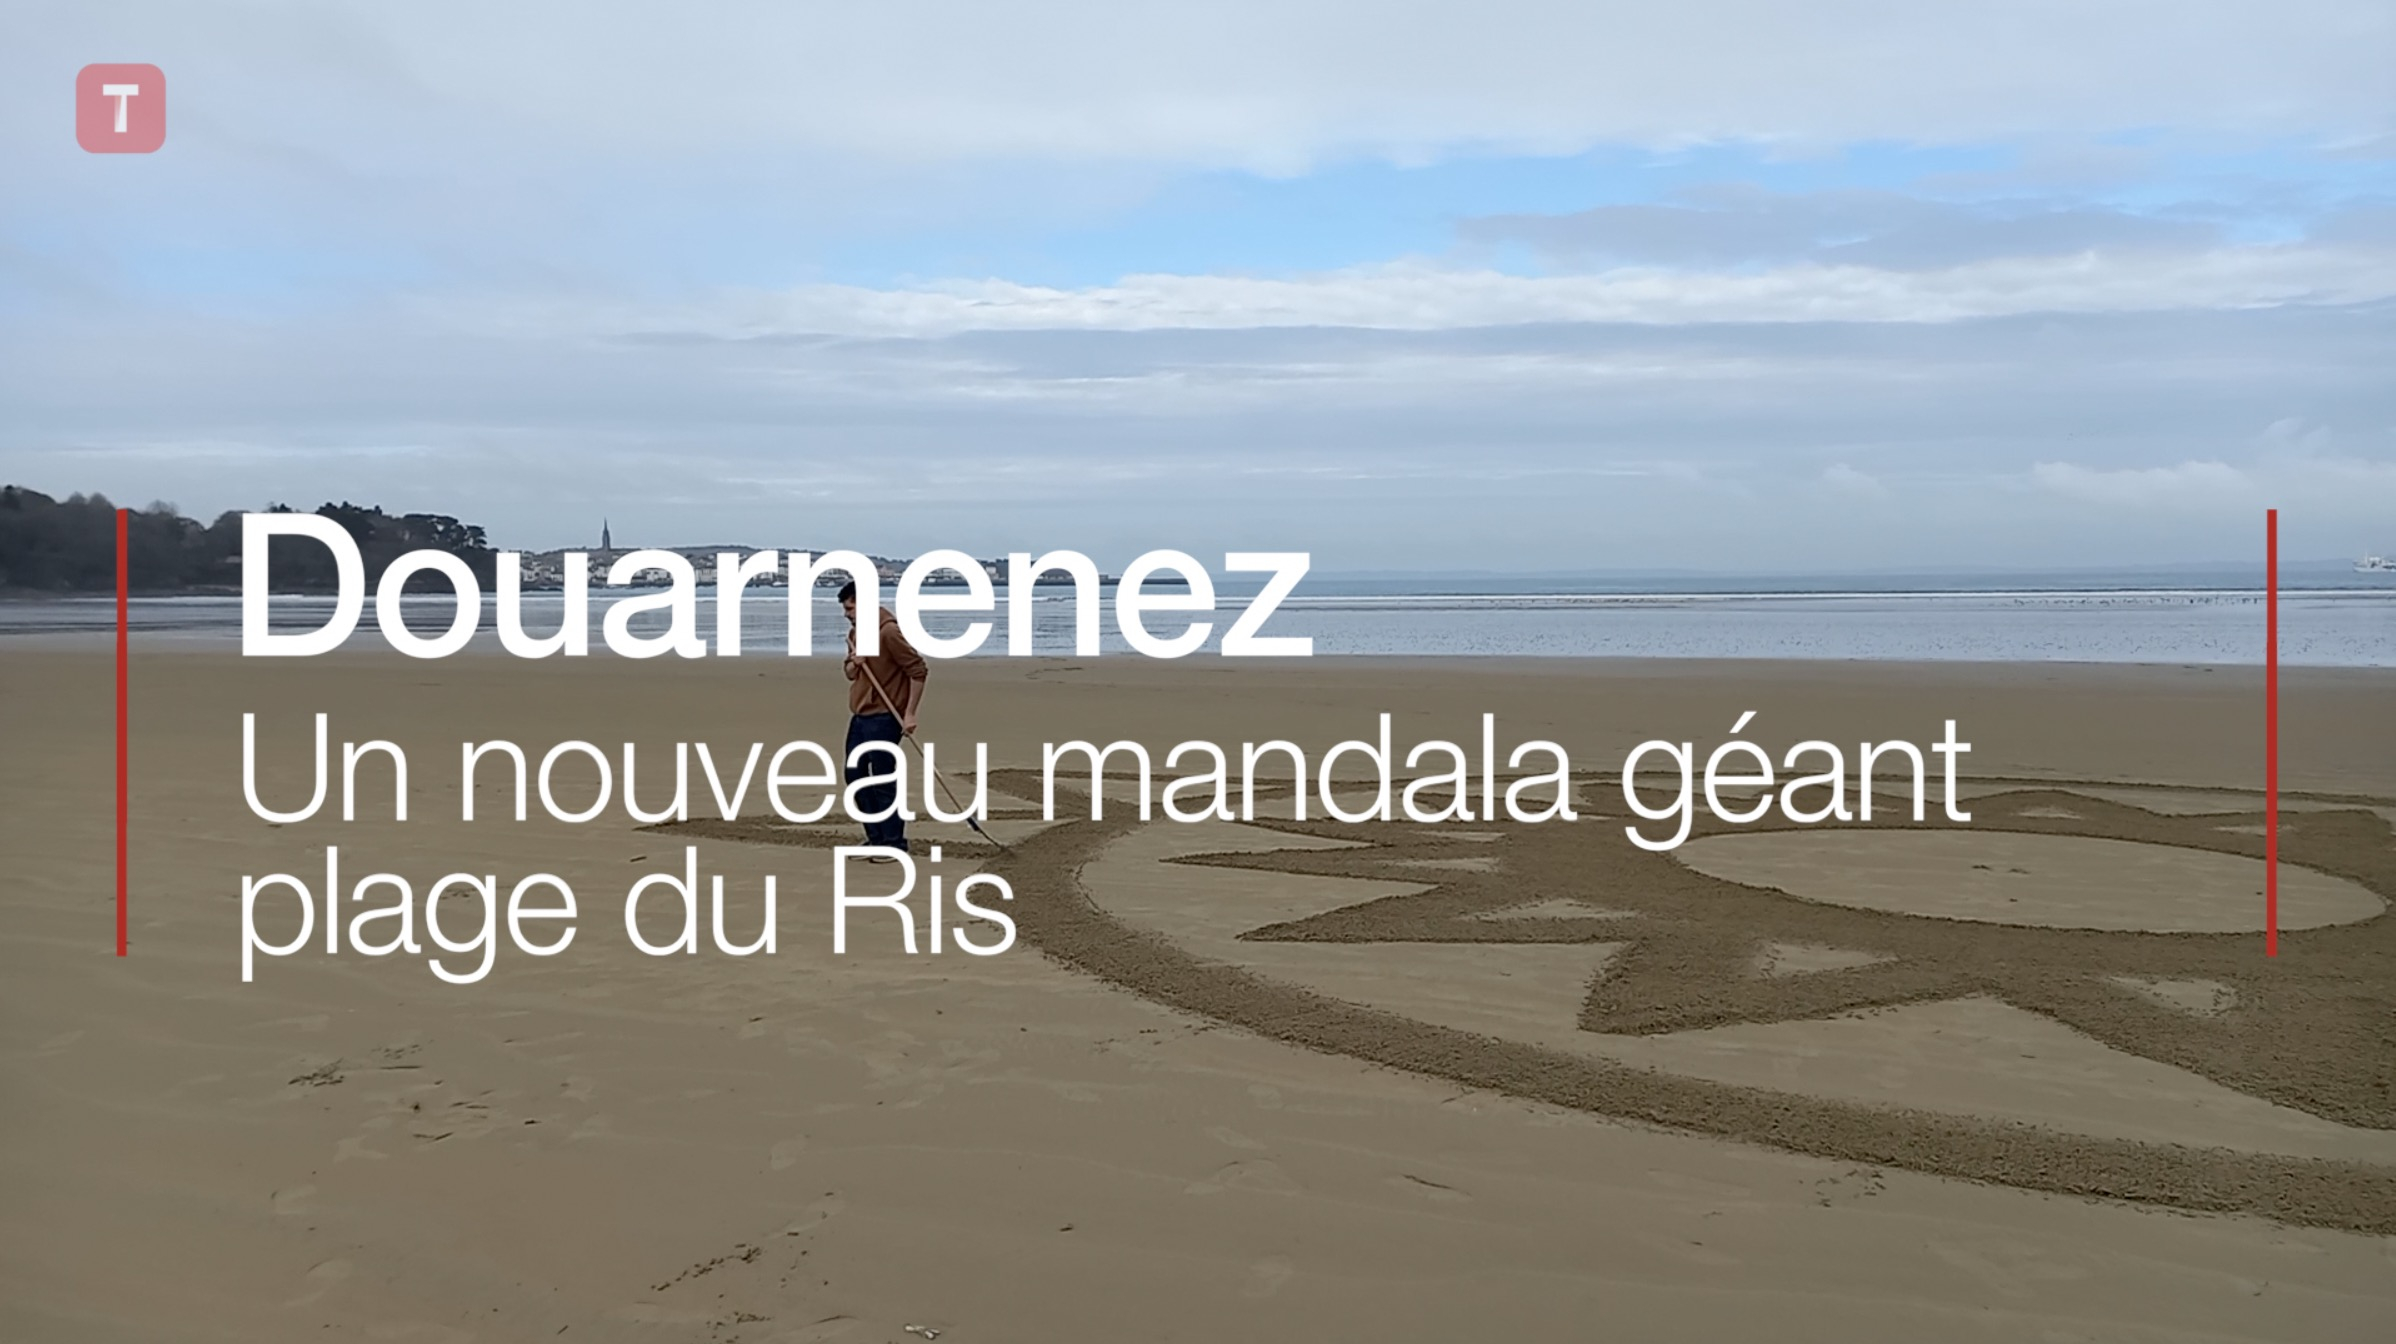 Douarnenez. Un nouveau mandala géant plage du Ris (Le Télégramme)